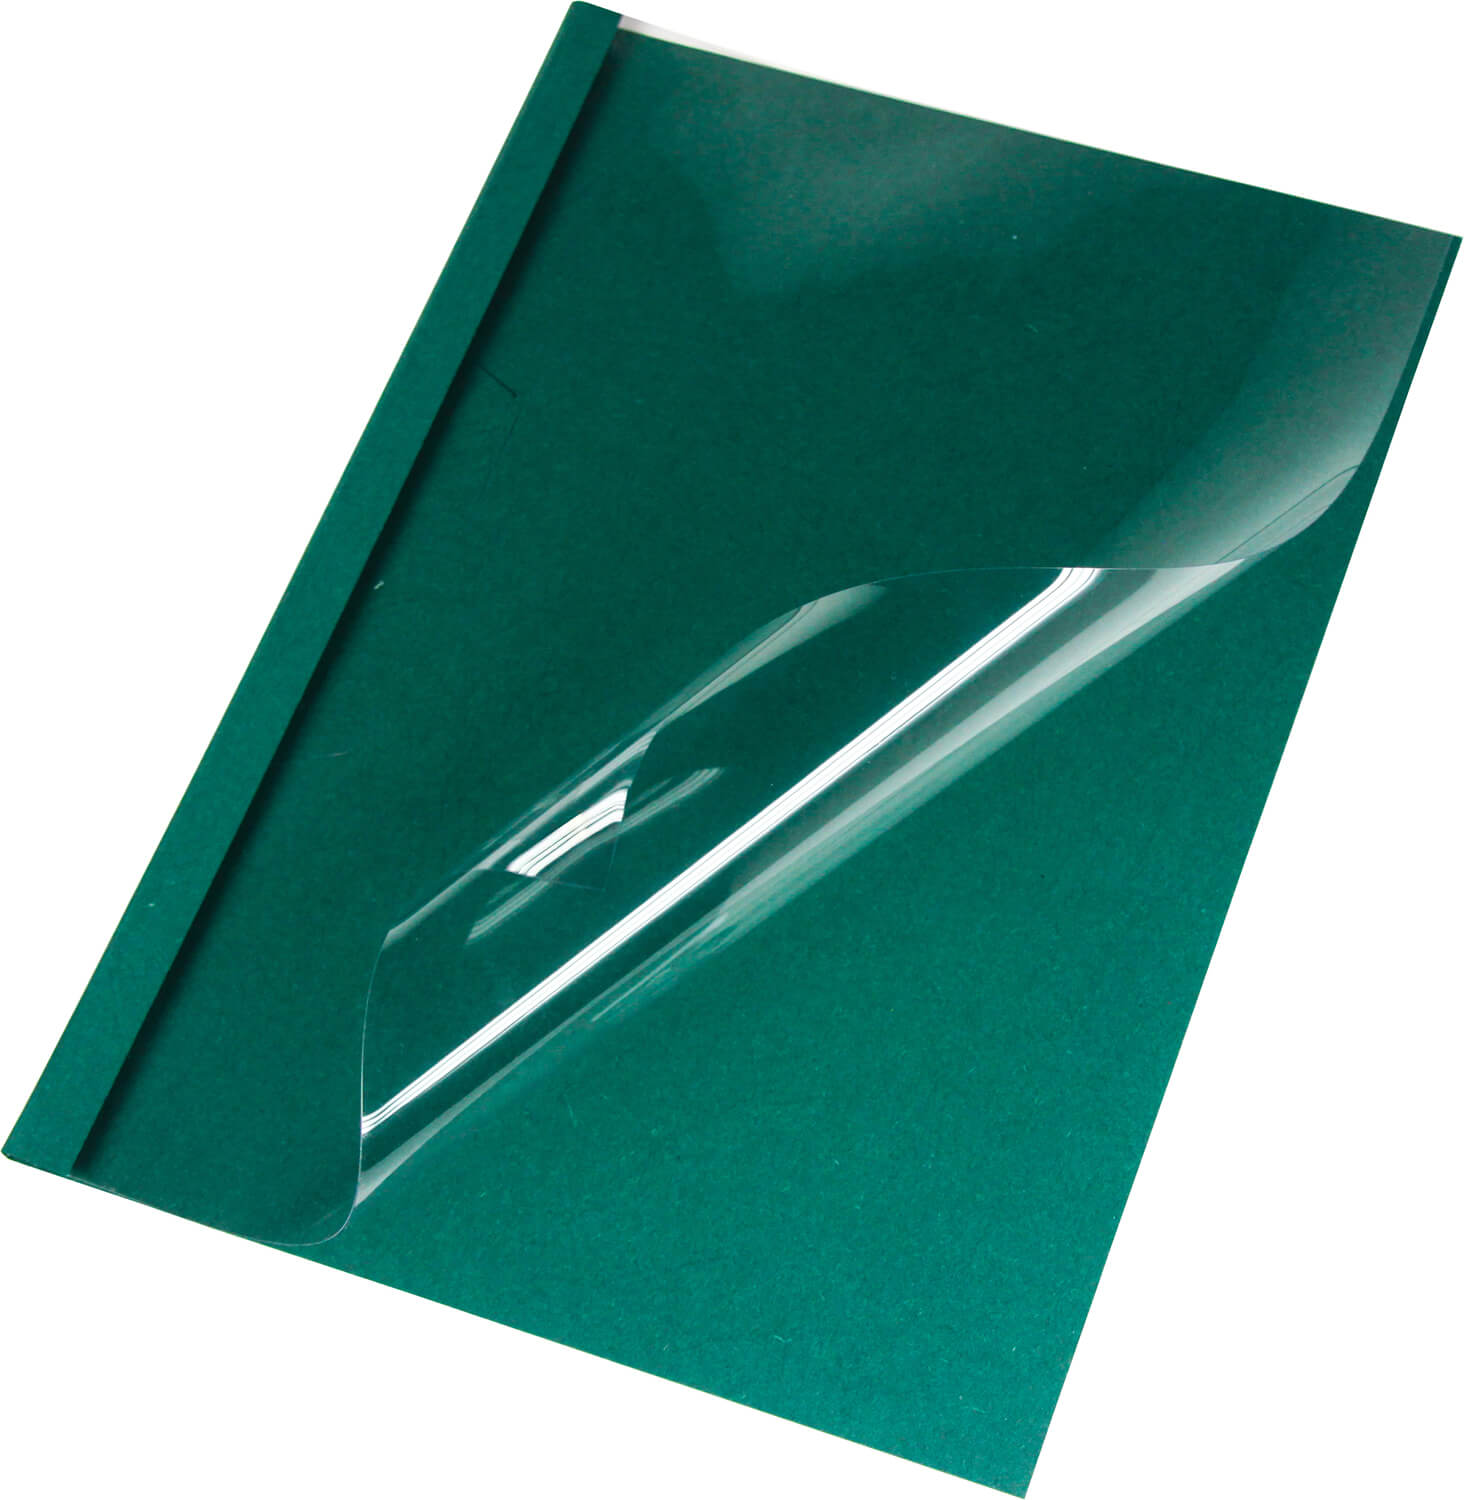 Thermobindemappen Leinen A4, grün 2 mm, matte Vorderseite | Bestnr. LMG-BMDLEM-GR-R2